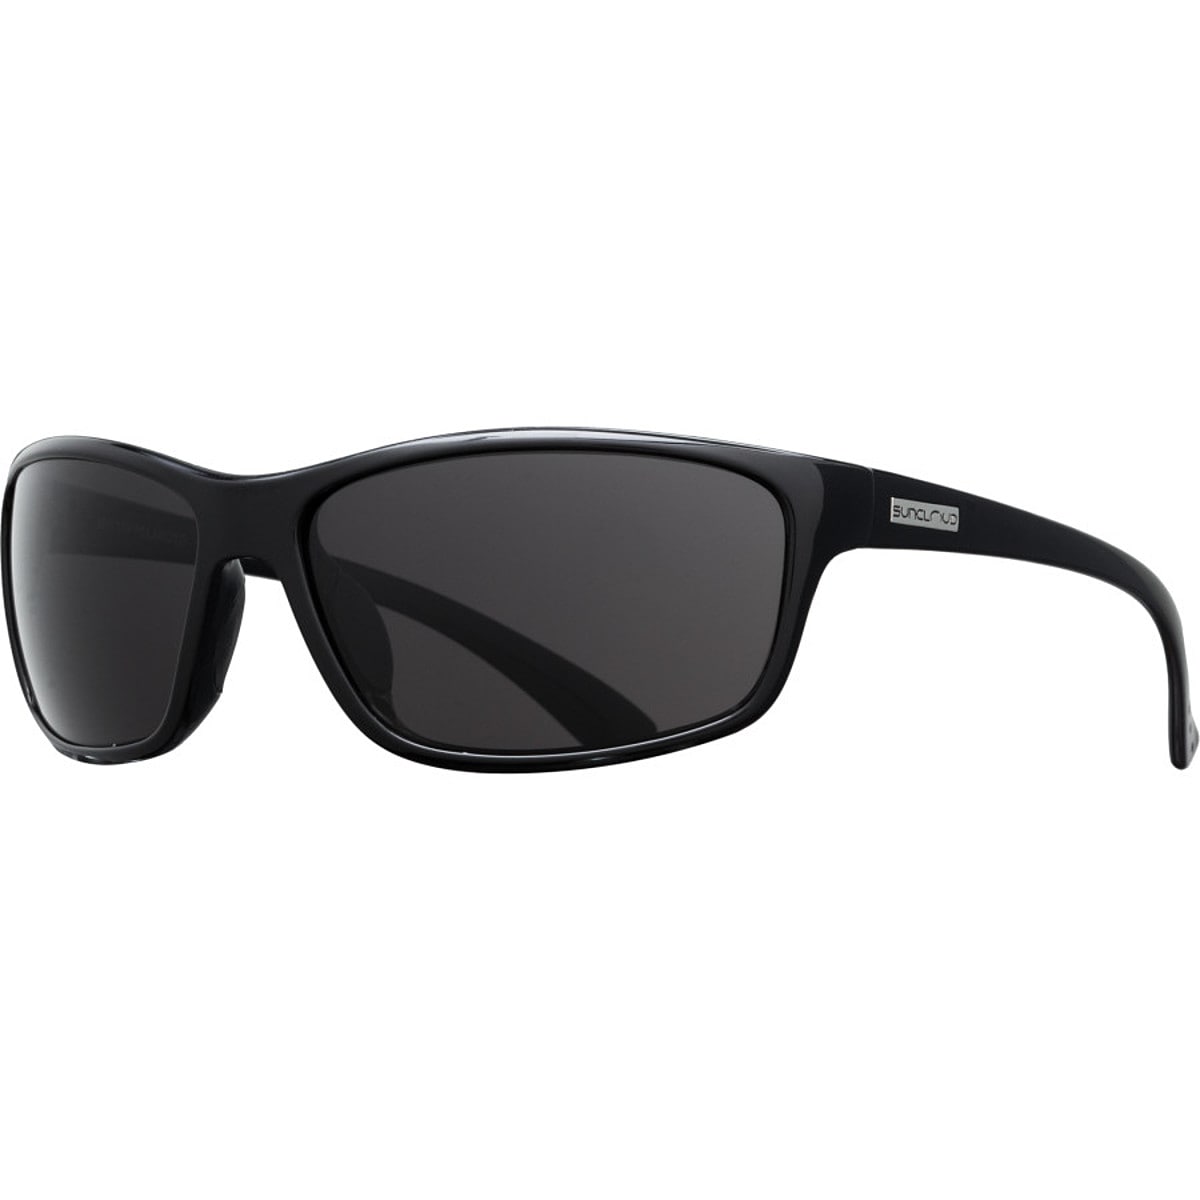 Поляризованные солнцезащитные очки sentry Suncloud Polarized Optics, цвет black/gray очки солнцезащитные stylemark polarized l2438f photochrome хамелеон